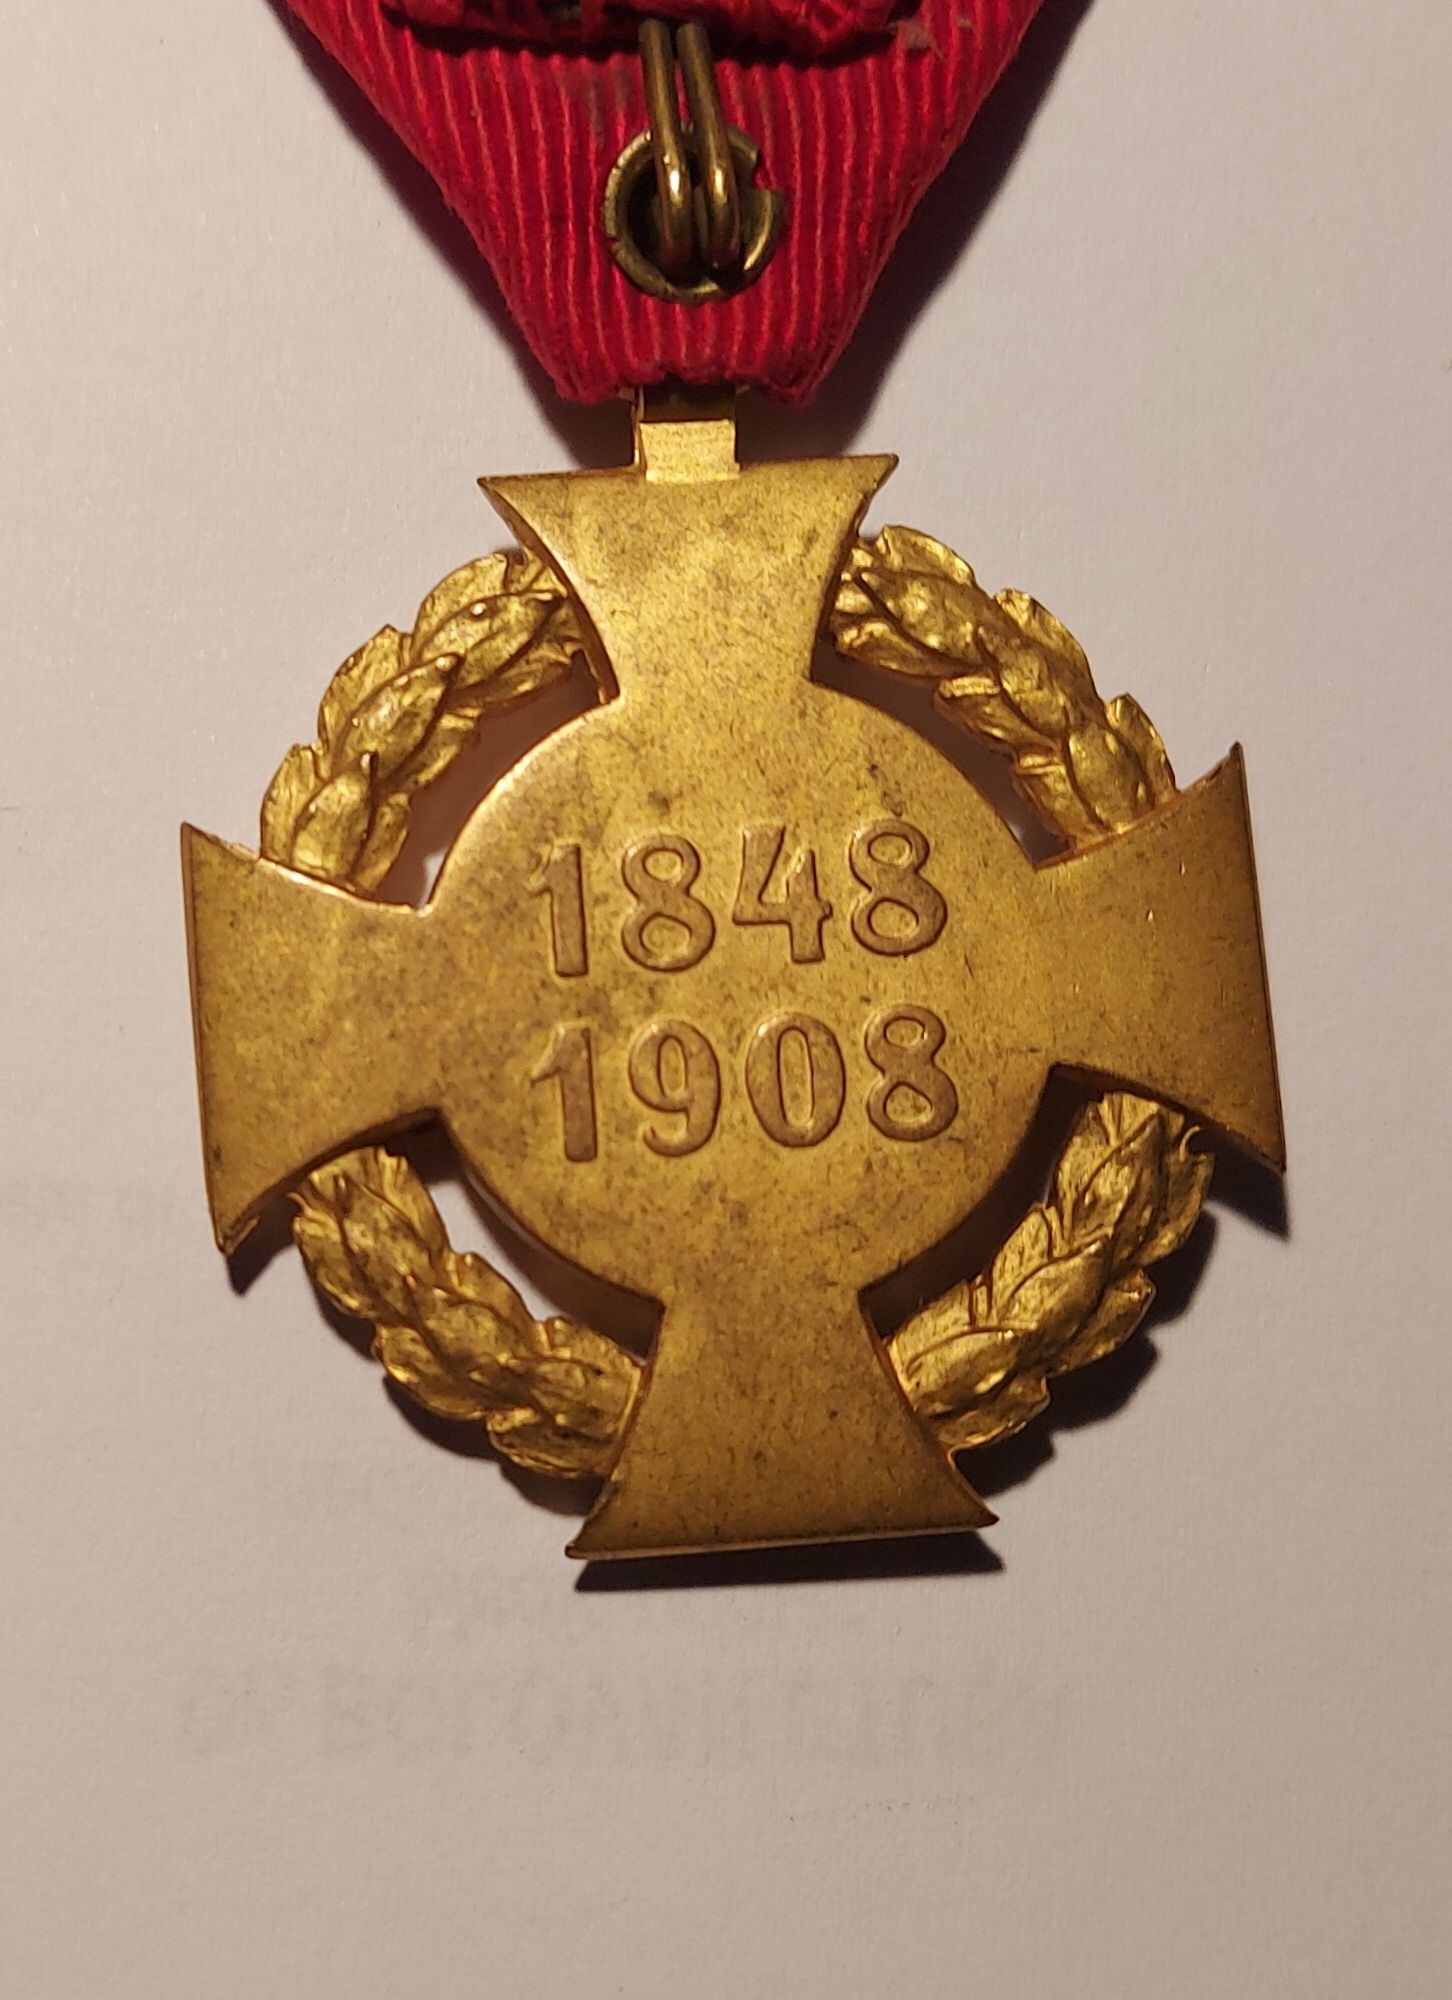 Medalie"Frantz Joseph ",împăratul Austro-ungariei